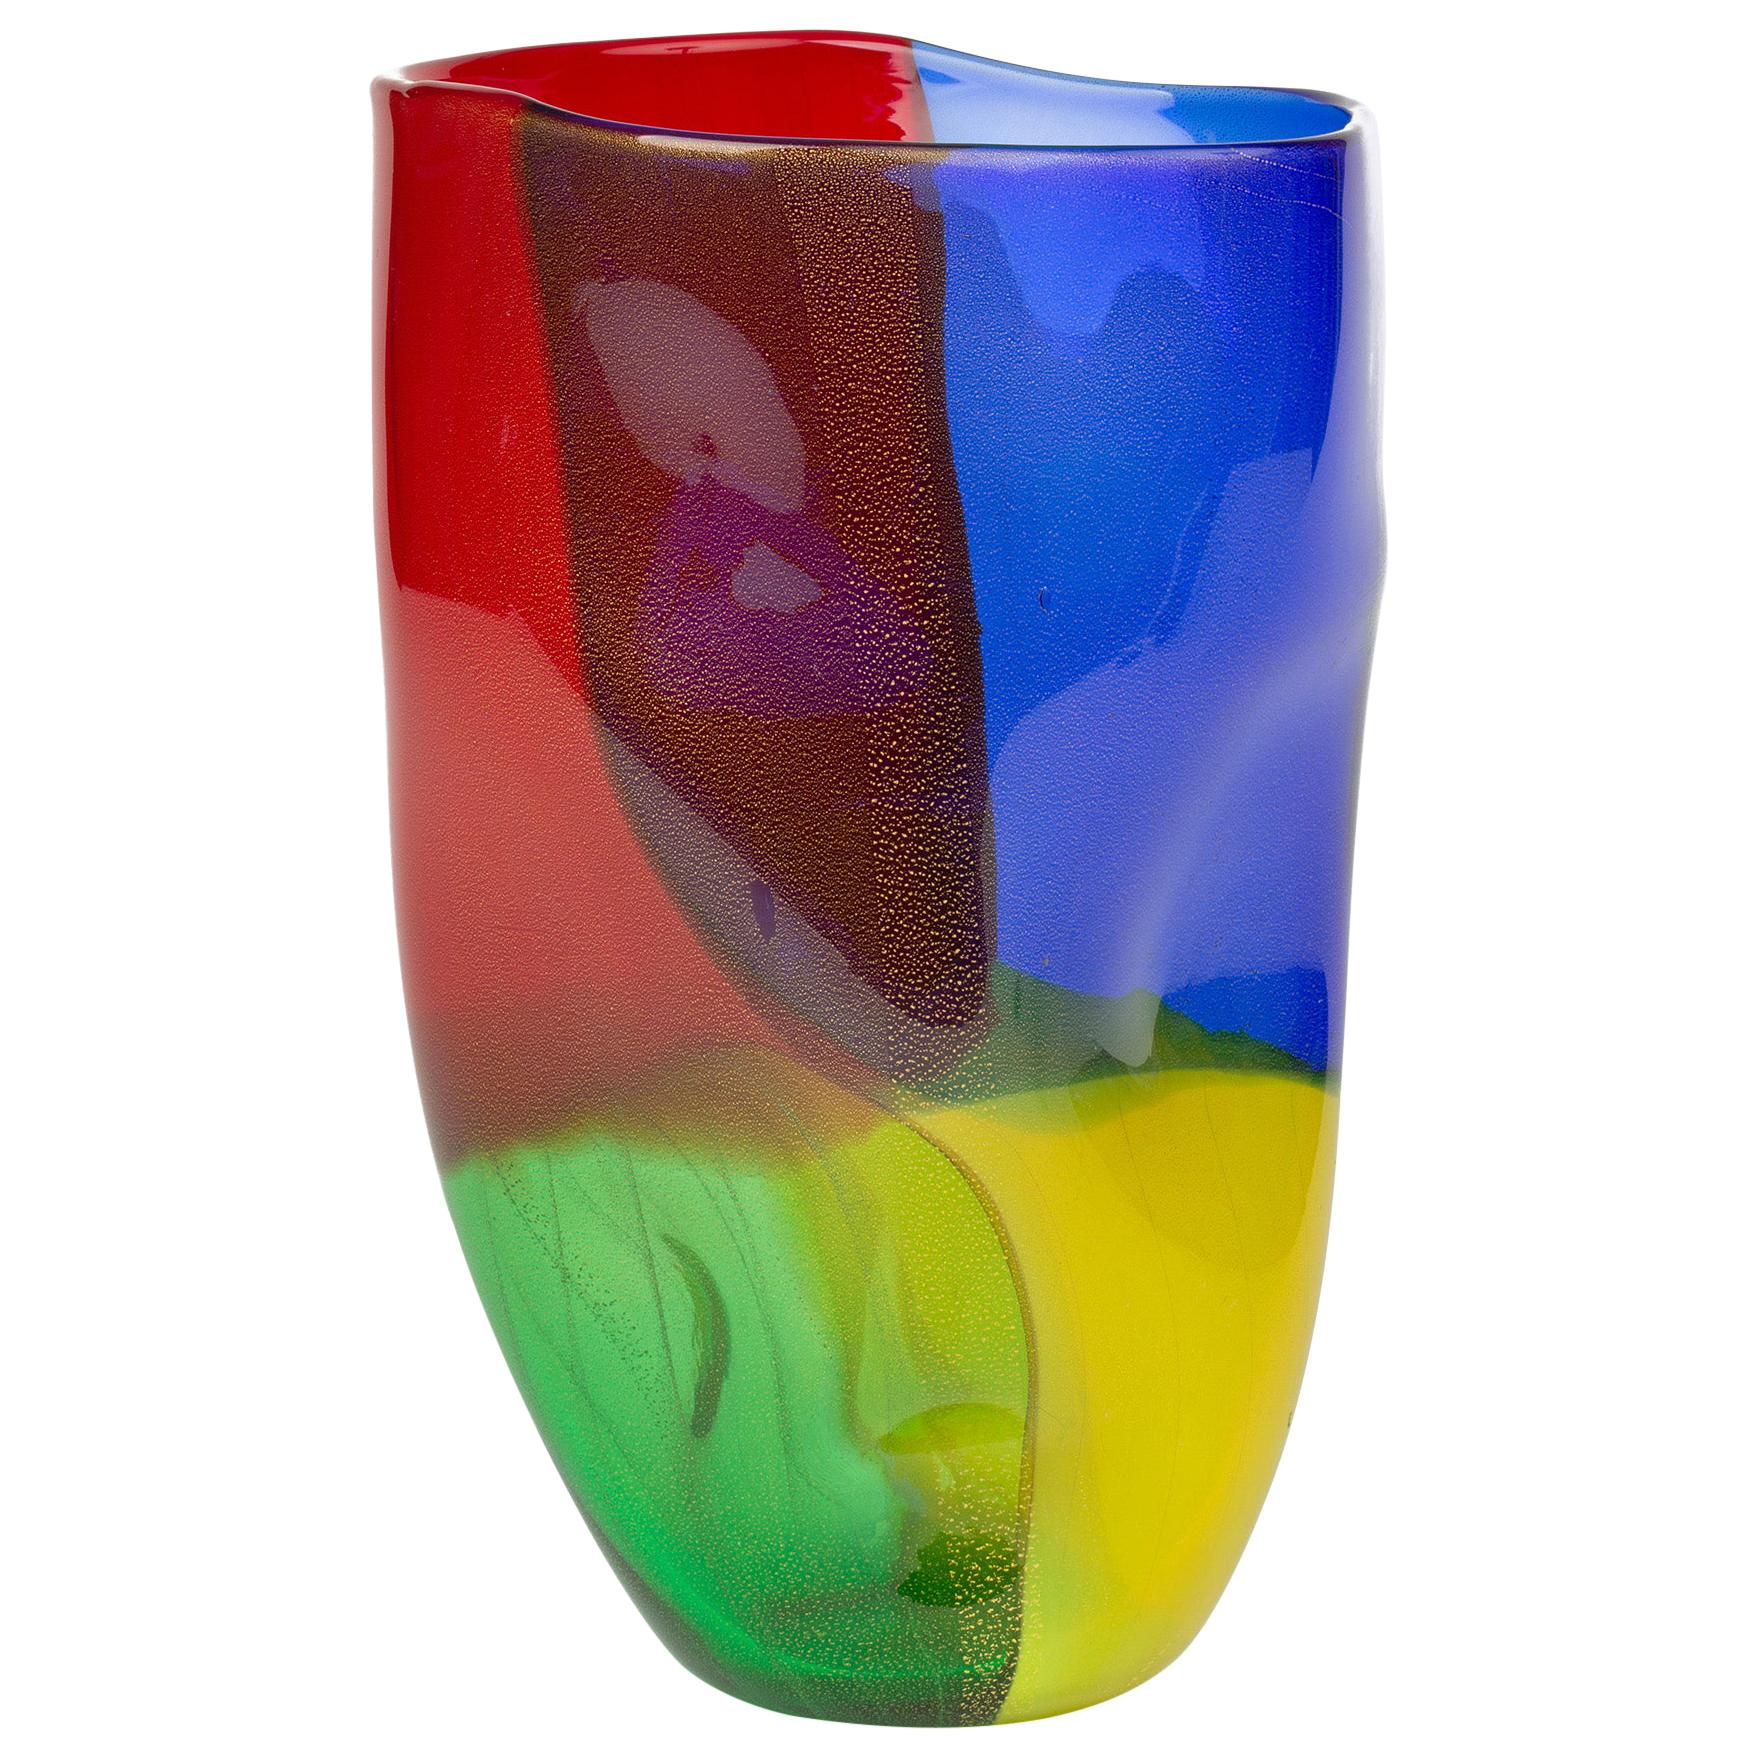 Seguso Viro Murano 4 Quarti Incalmo Colored Art Glass Vase For Sale